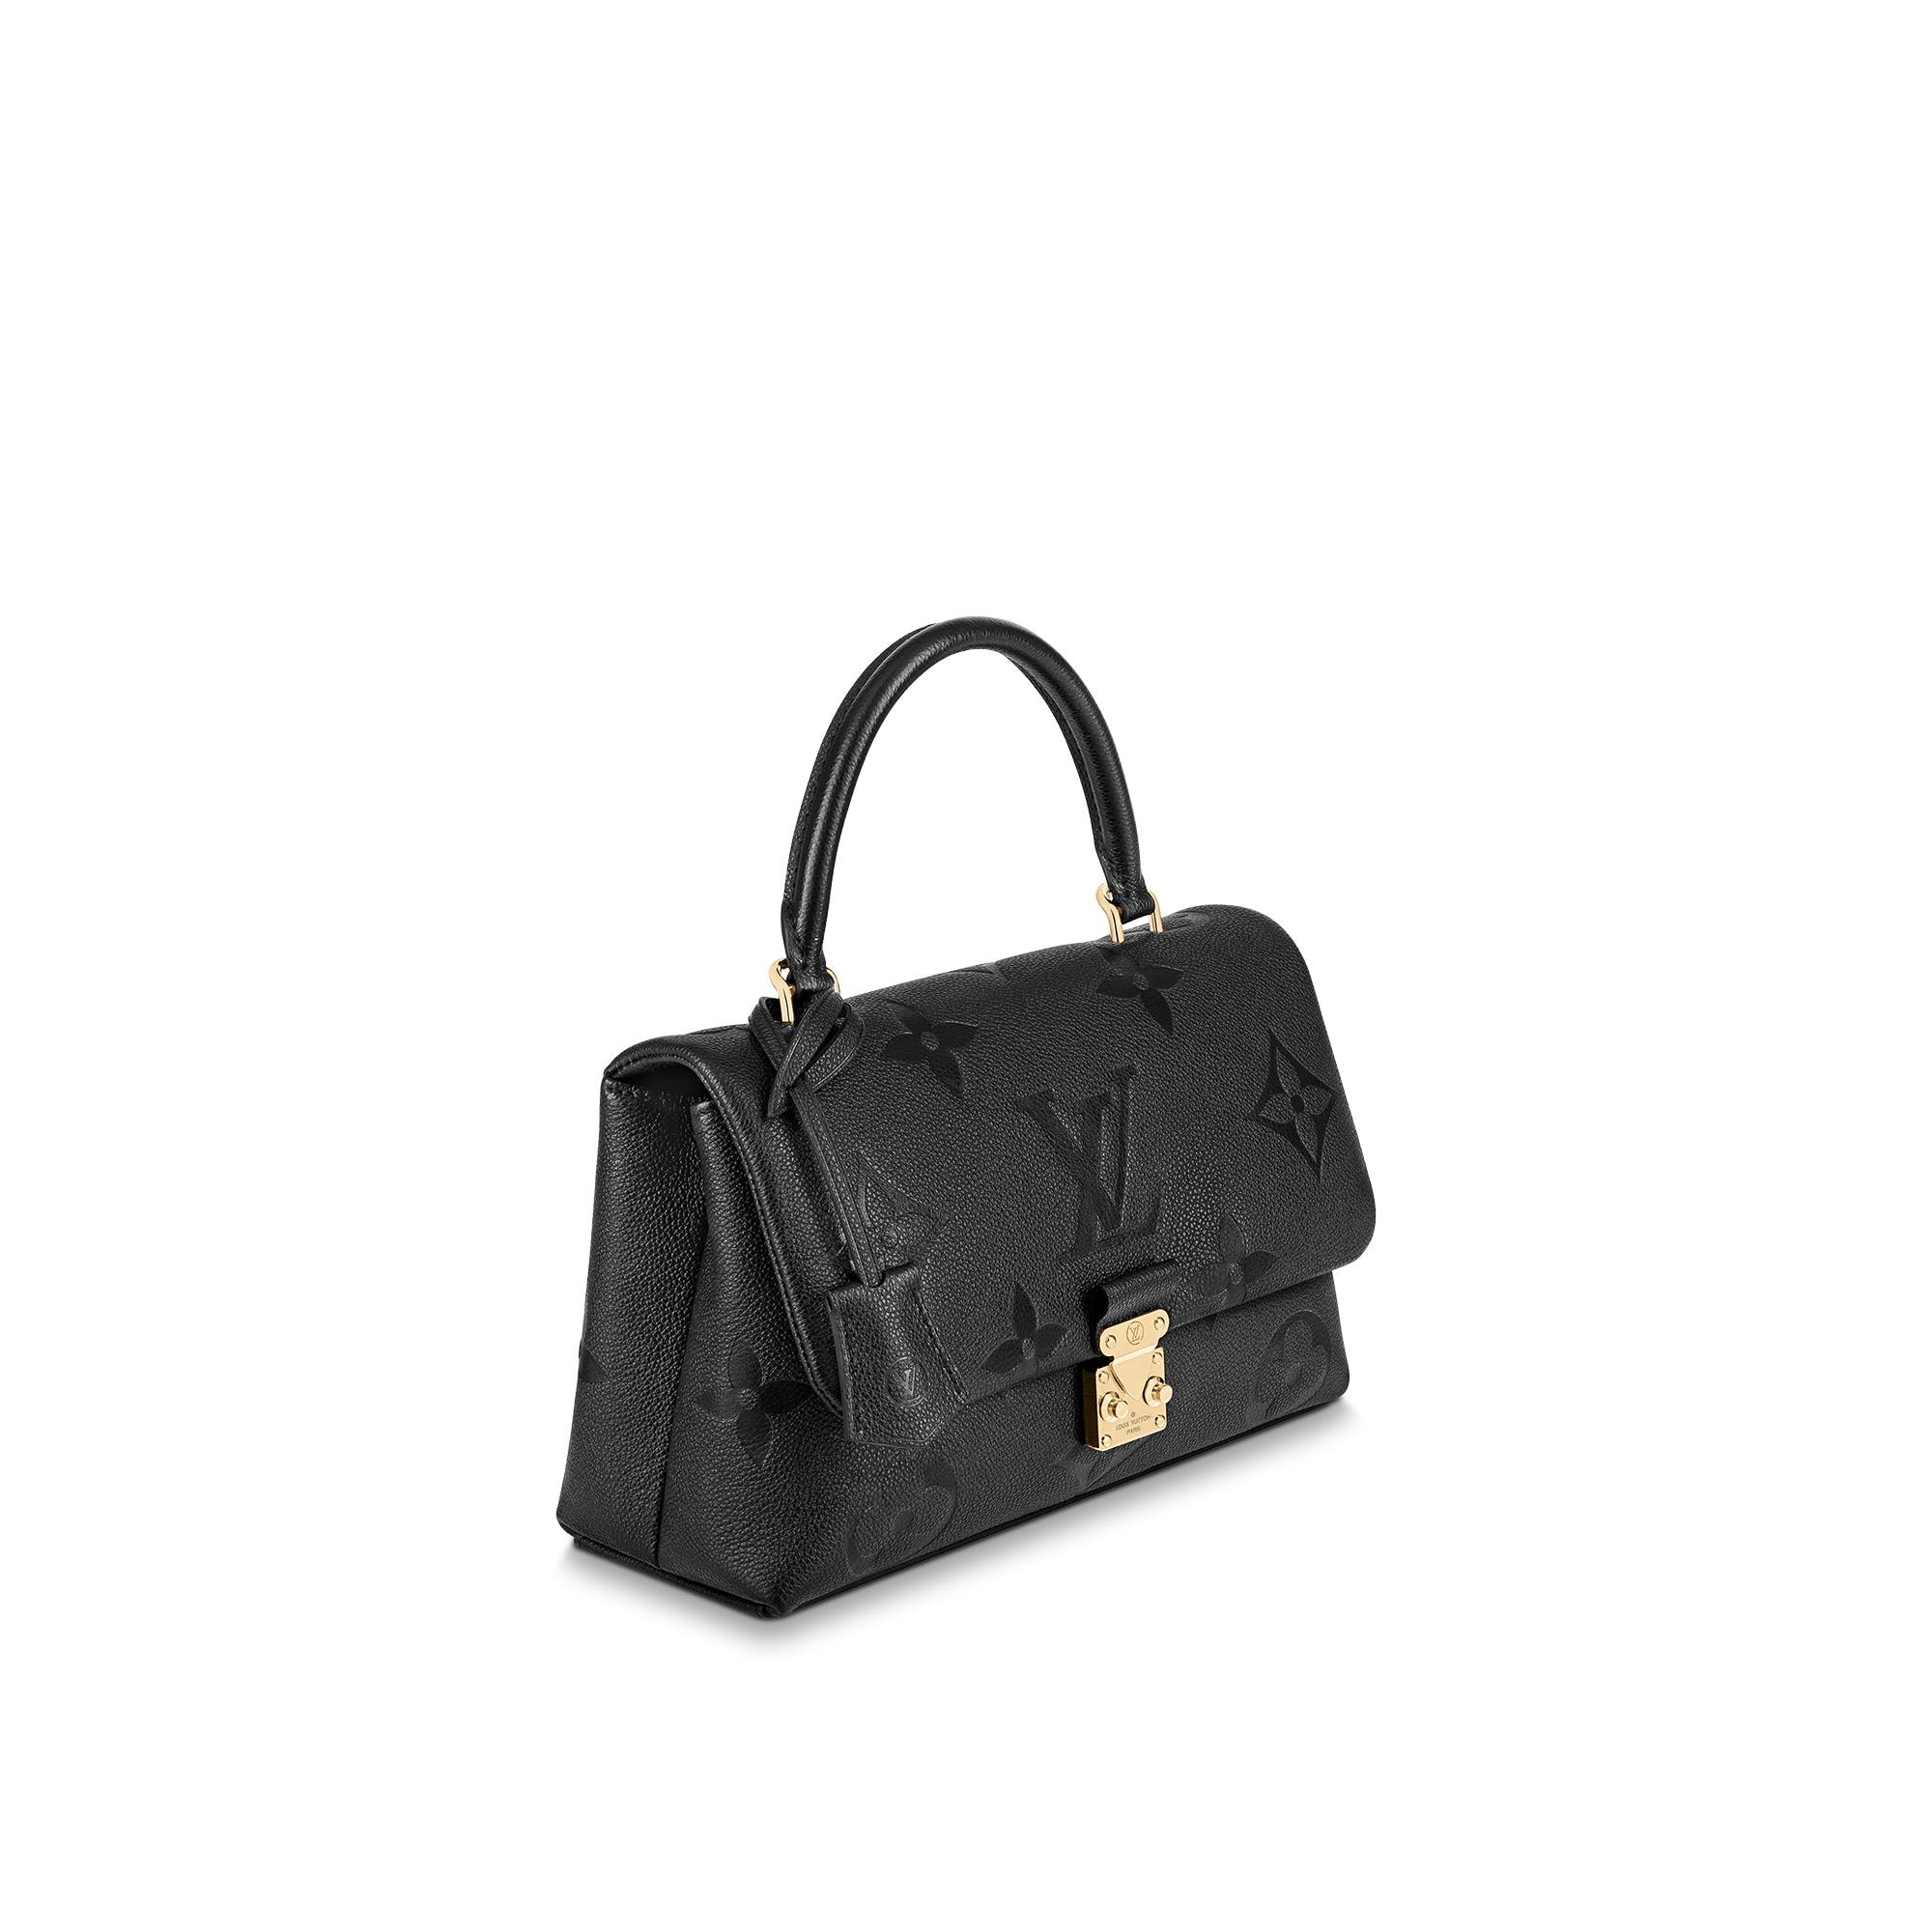 M45976 Louis Vuitton Monogram Empreinte Madeleine MM Handbag-Cream